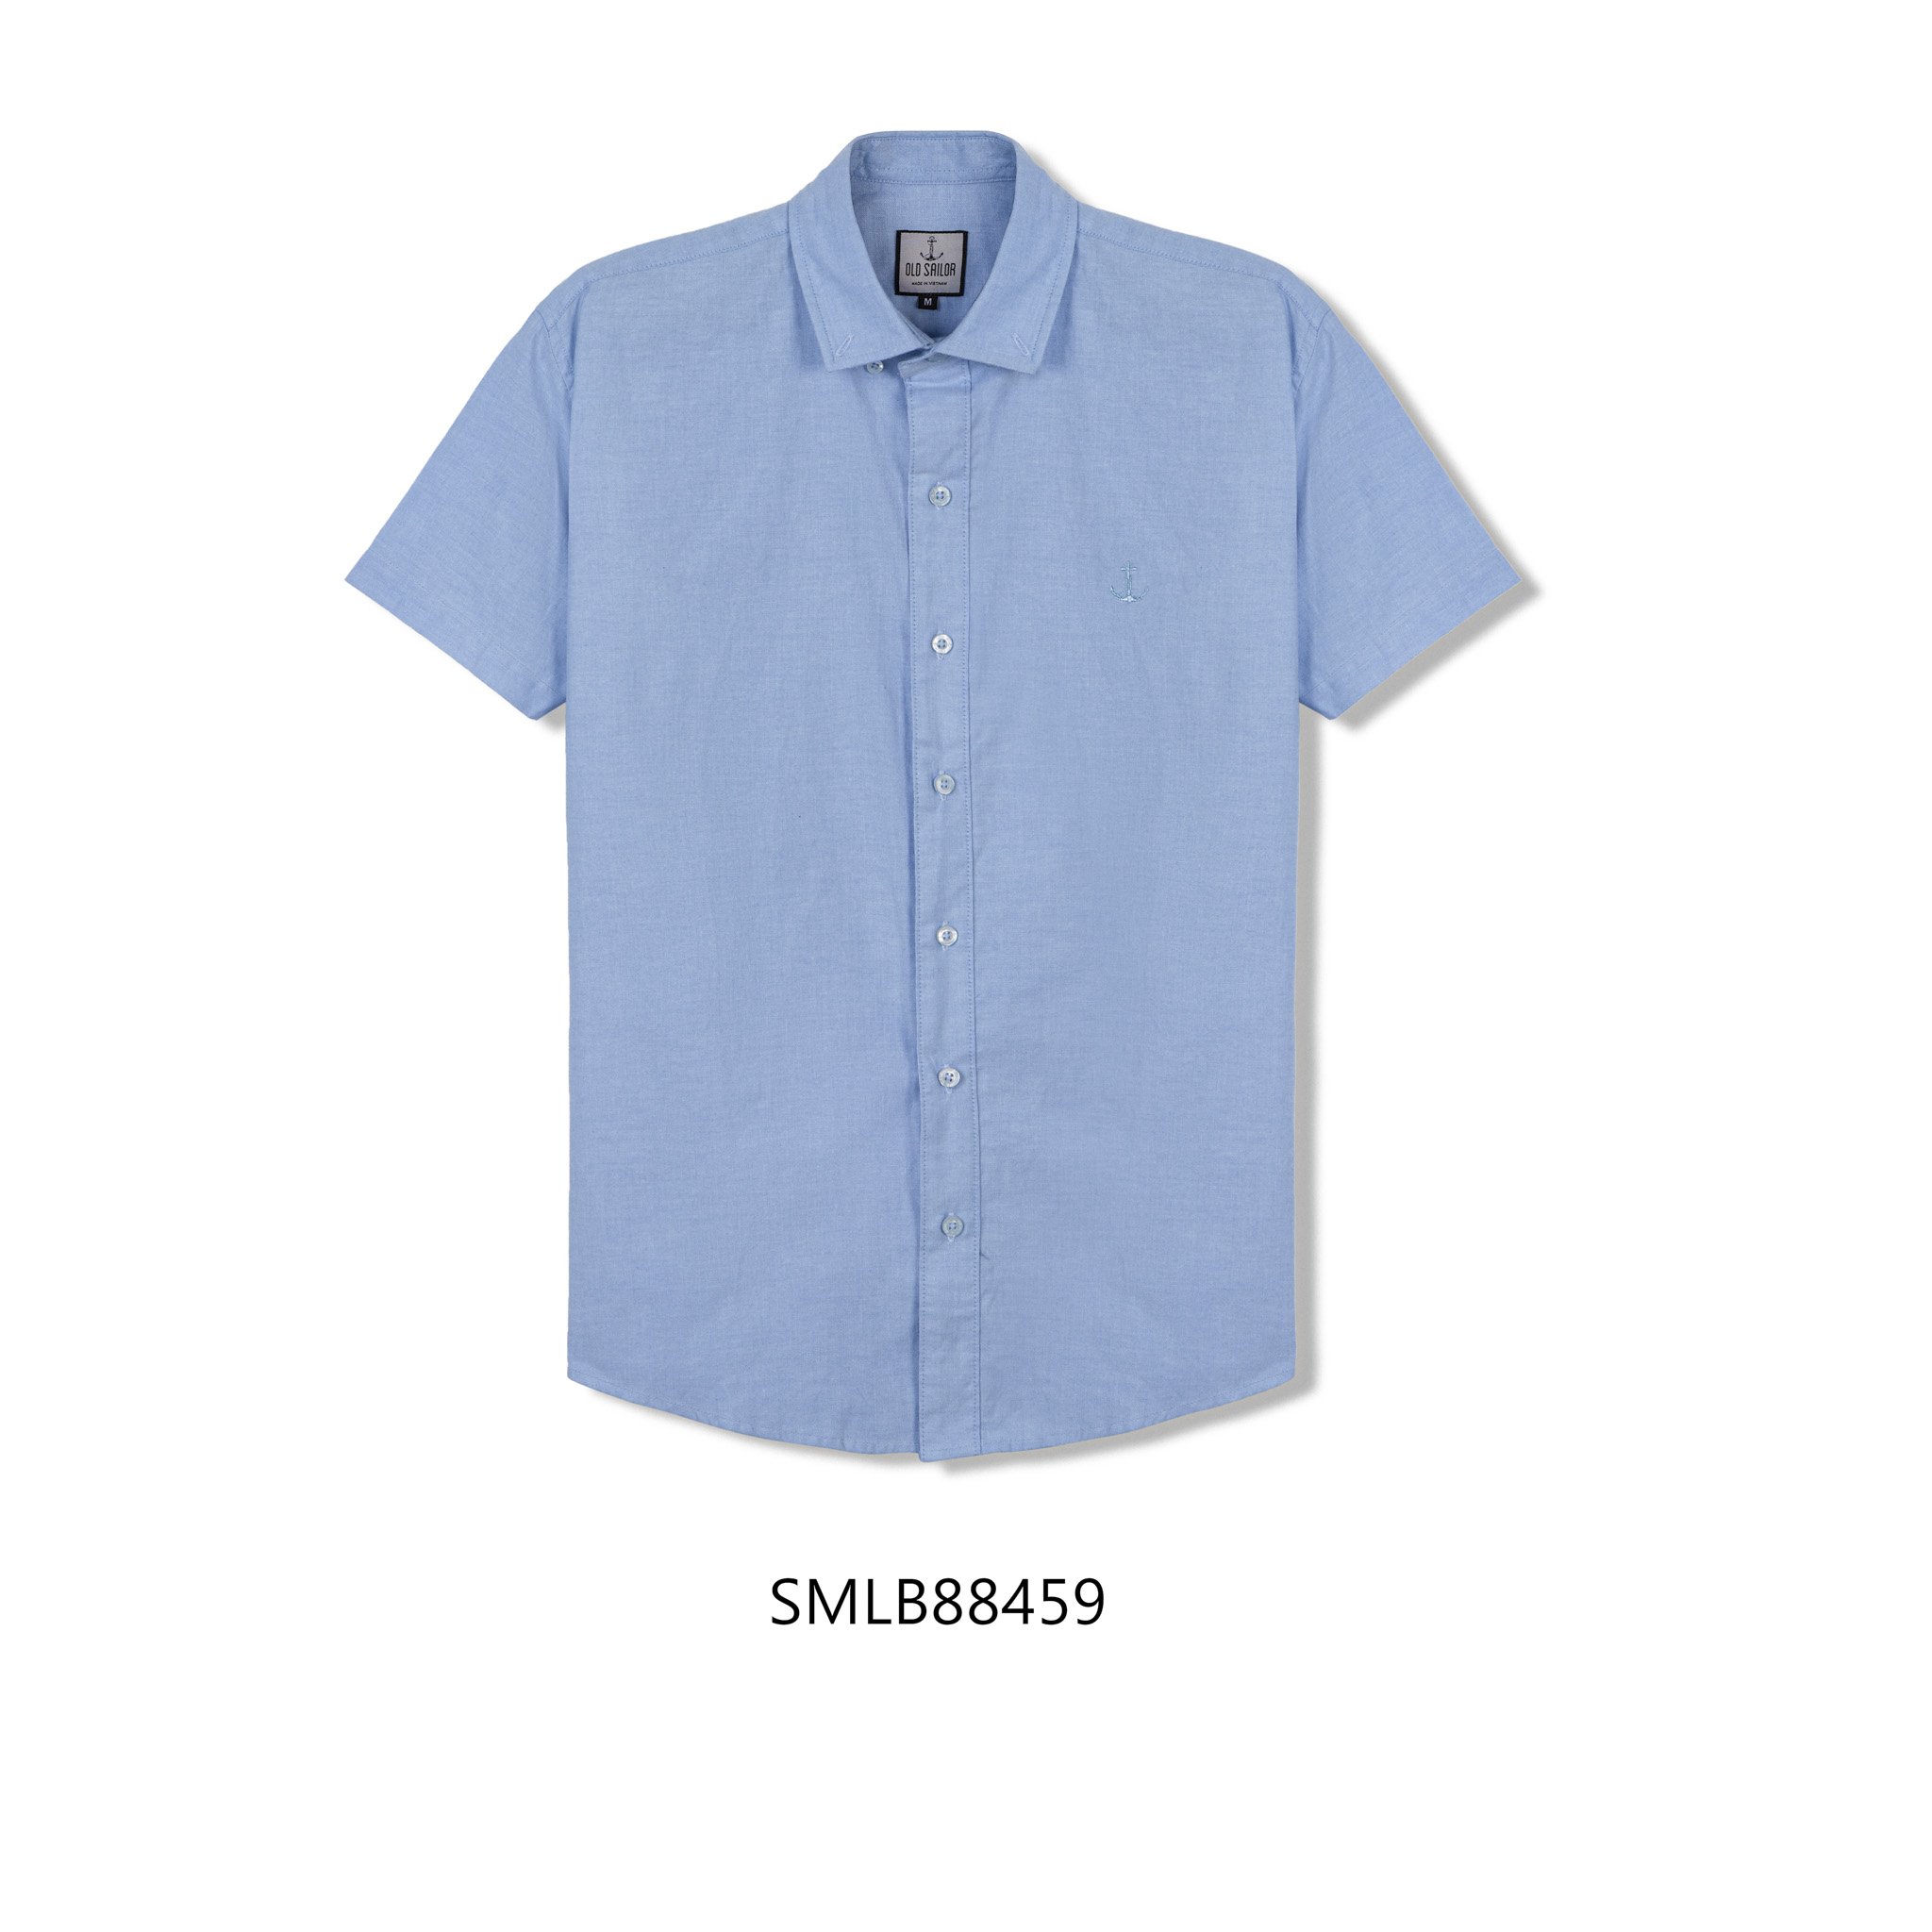 Áo Sơ Mi Oxford Tay Ngắn Old Sailor - O.S.L Oxford Shirt - Blue - Smlb88459  - Xanh - Big Size